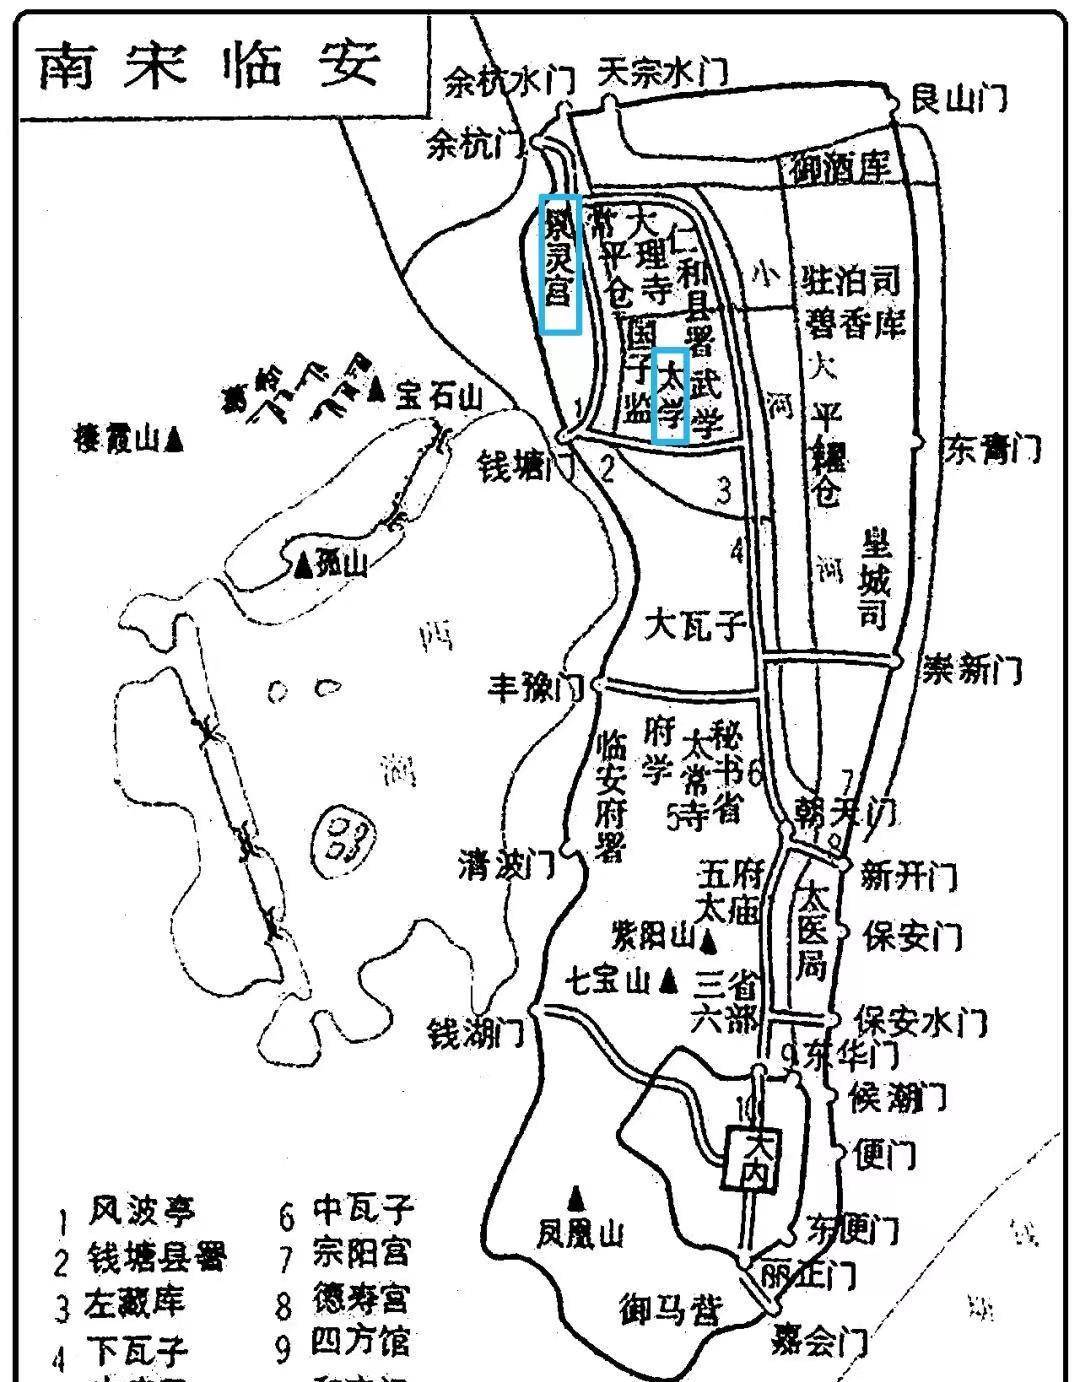 从地图上看,礼部贡院和景灵宫确实相去不远,故云贡院路,原庙所出也